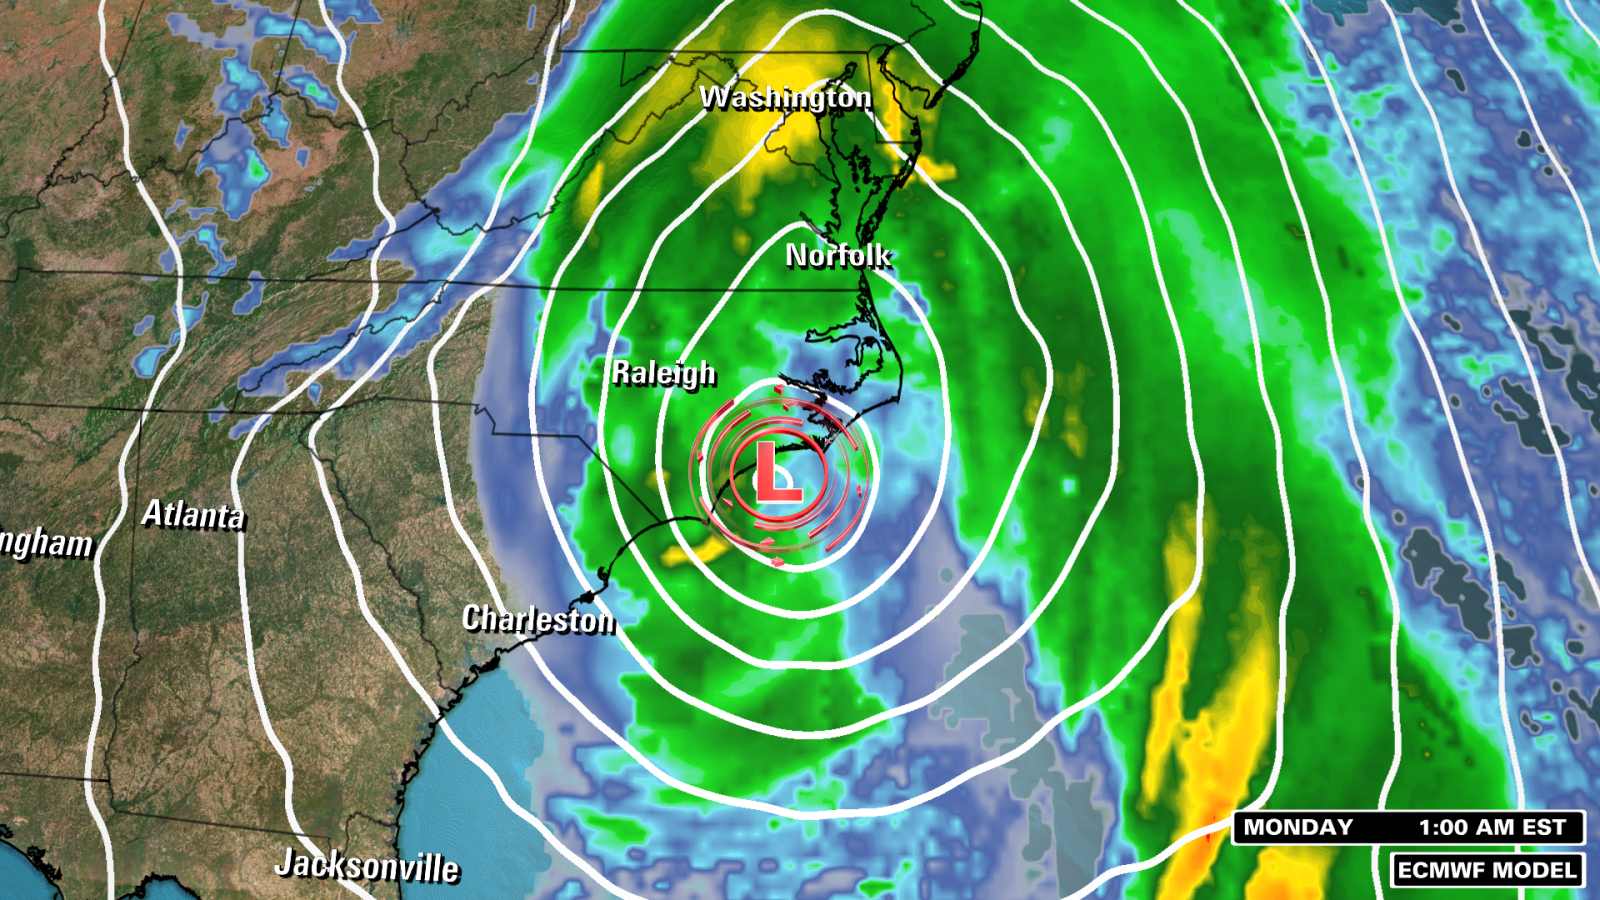 Una tormenta poderosa azotará Florida el sábado y se fortalecerá en la costa este de EE.UU. el fin de semana: este es el pronóstico